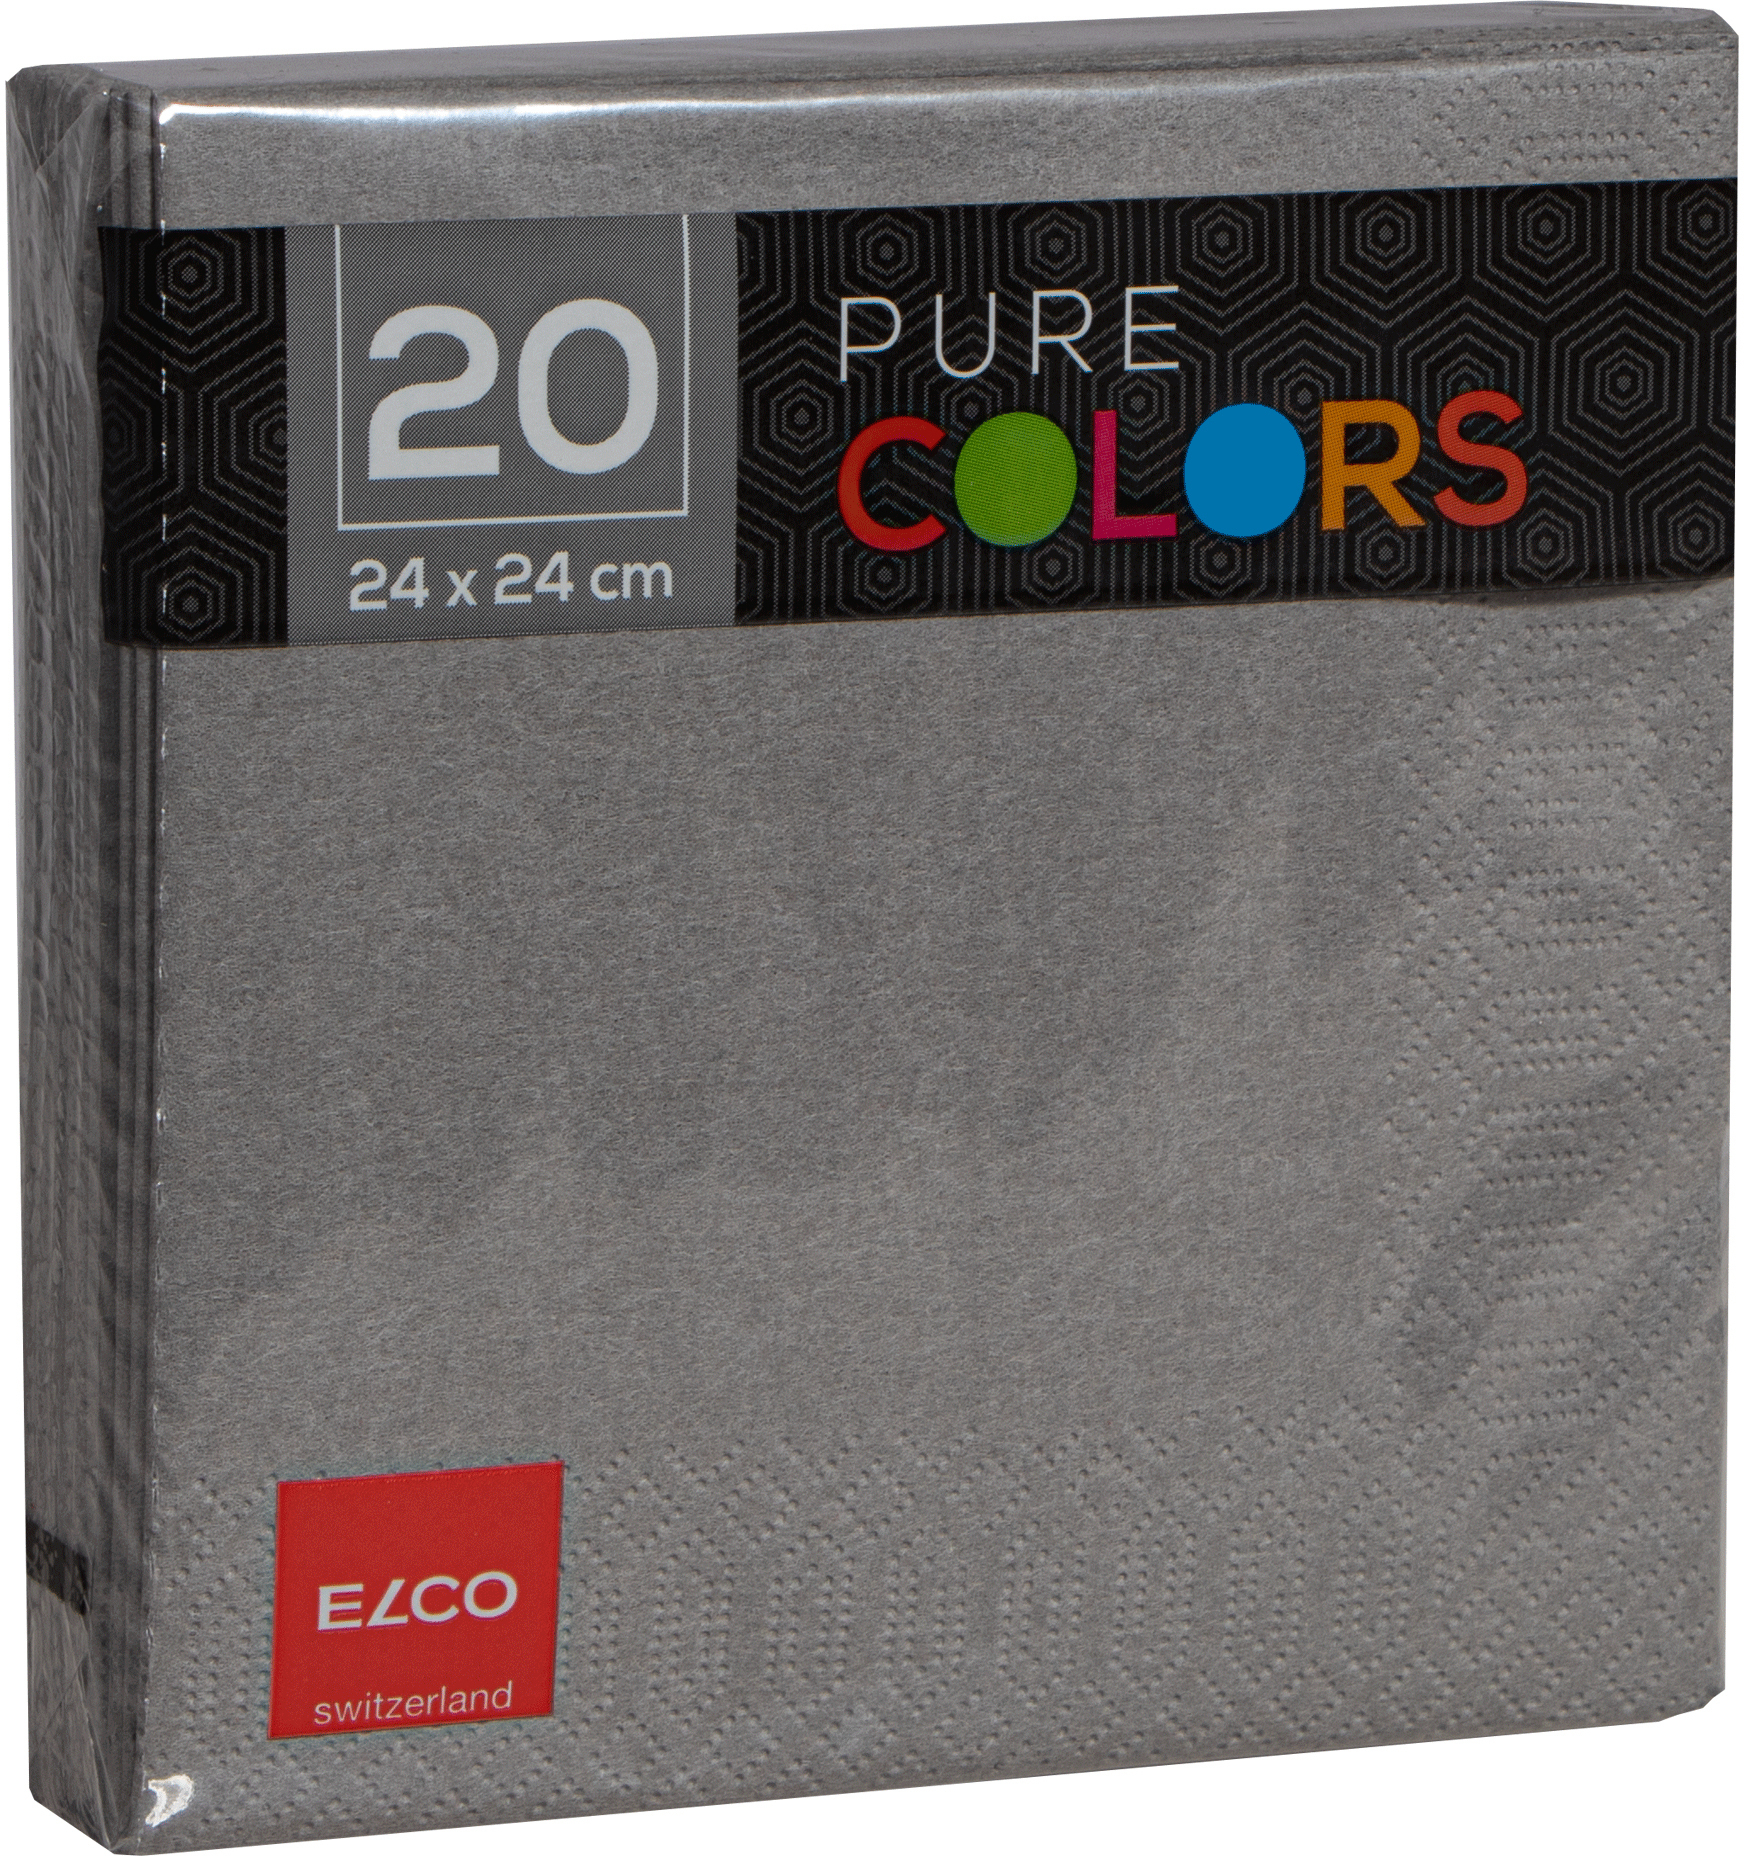 ELCO Serviettes tissue 24x24cm PC234020-011 3 plis, gris 20pcs.